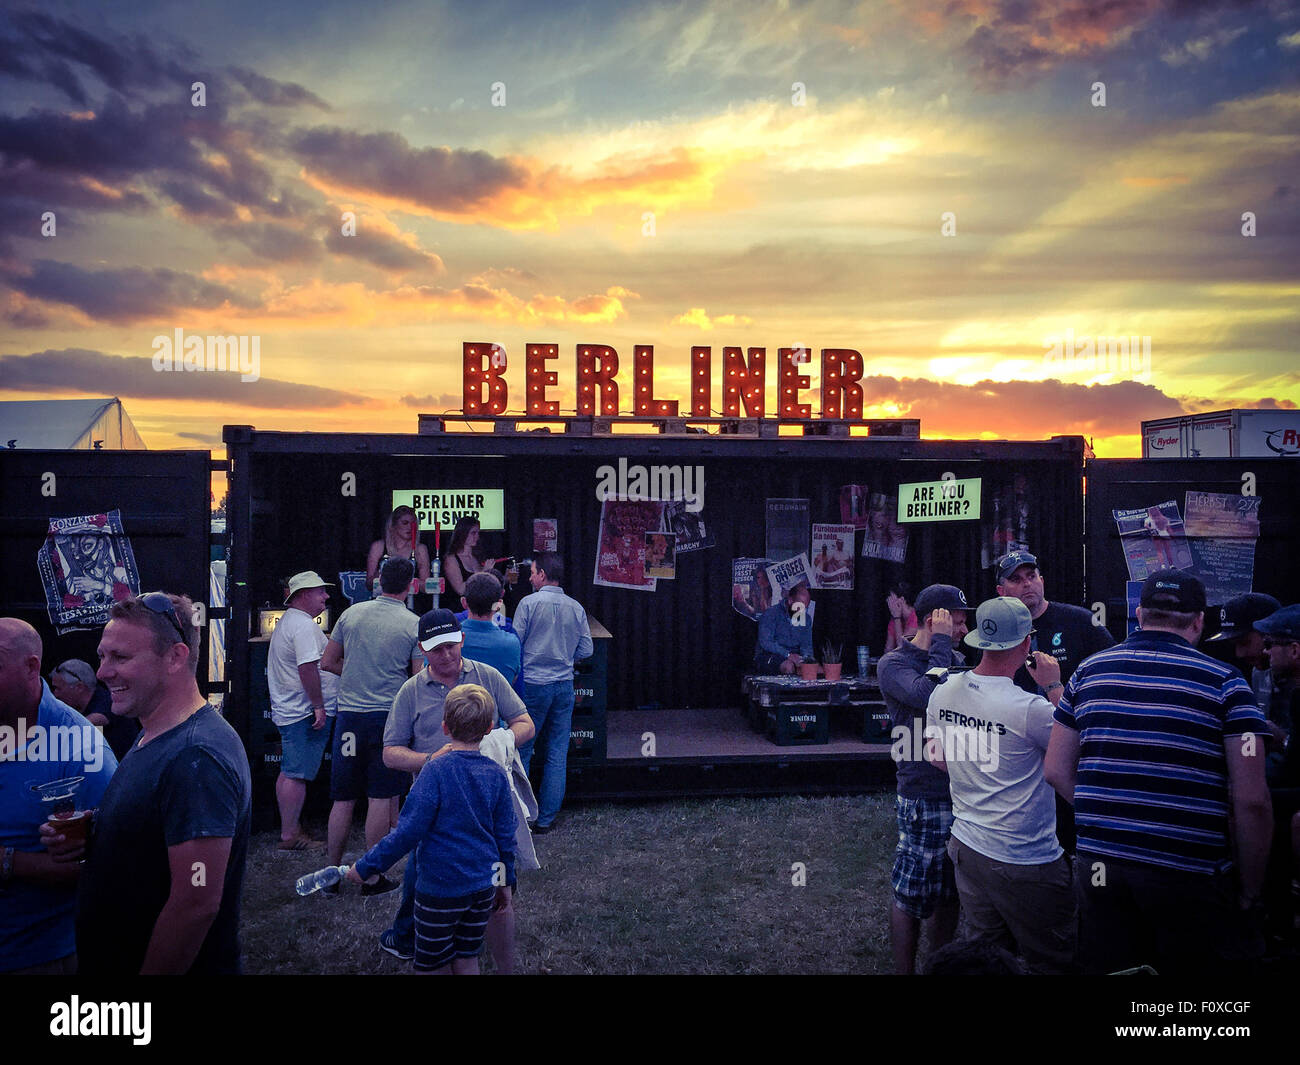 Berliner s'identifier des feux au ciel derrière, bar servant bier Banque D'Images